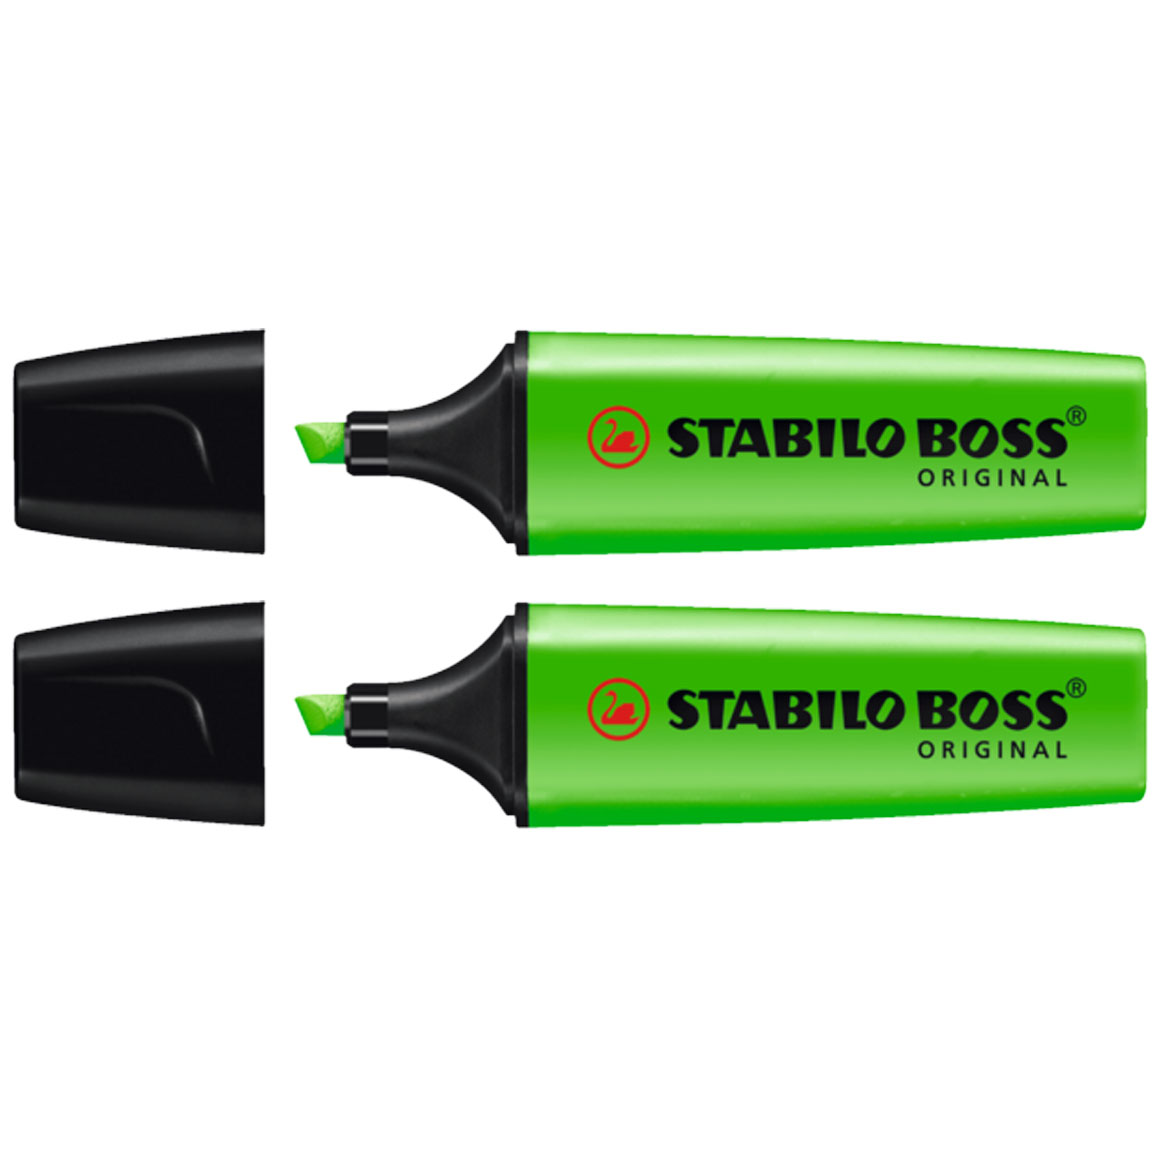 STABILO BOSS ORIGINAL markeerstift fluorescerend groen (2 stuks)